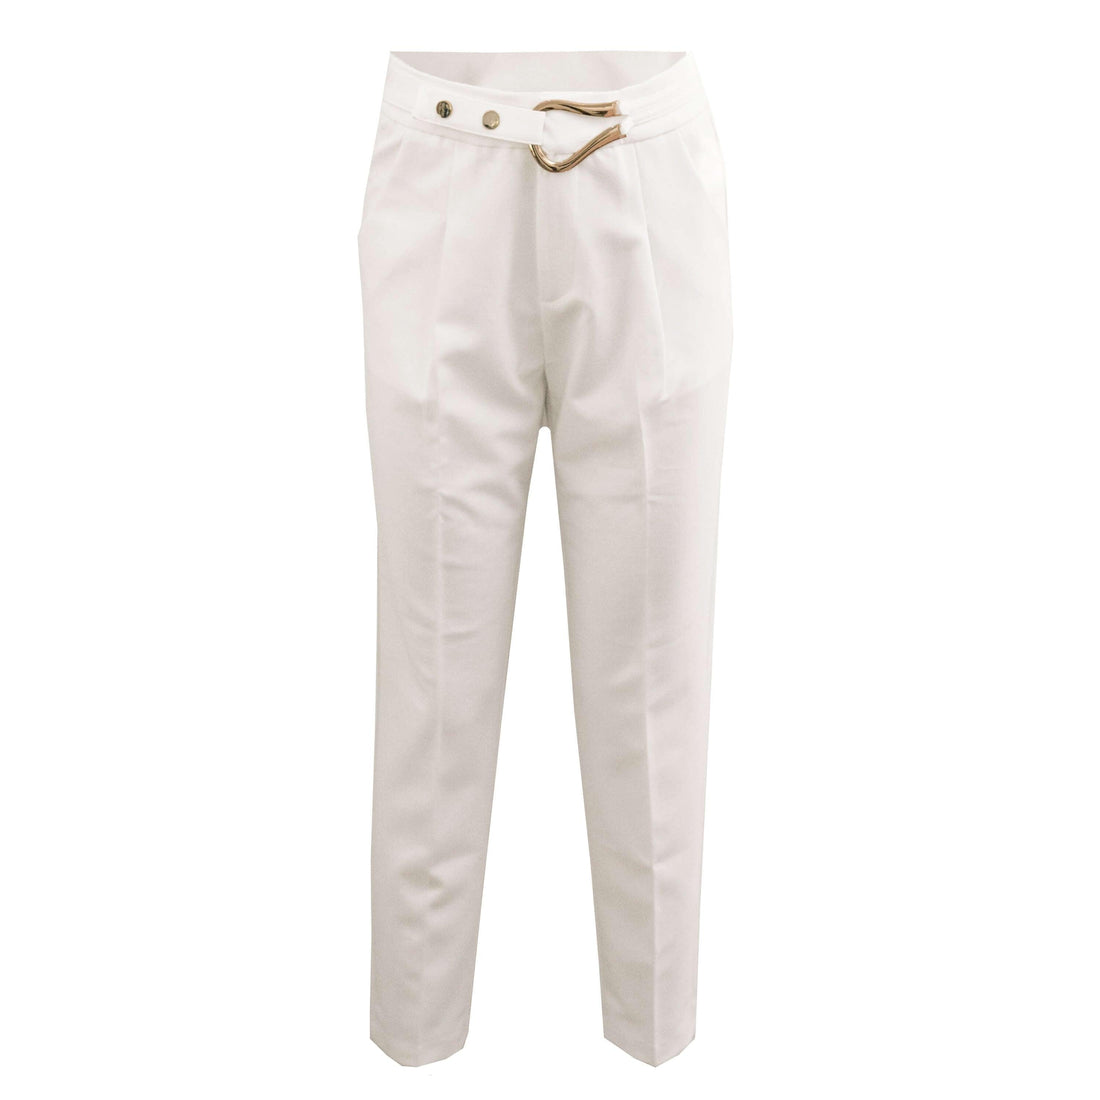 Witte pantalon met rechte pijp en gouden sier ceintuur. De pantalon is er in maat S, M en L en valt normaal op maat. Materiaal van de pantalon is:  74% polyester, 20% rayon, 6% spandex